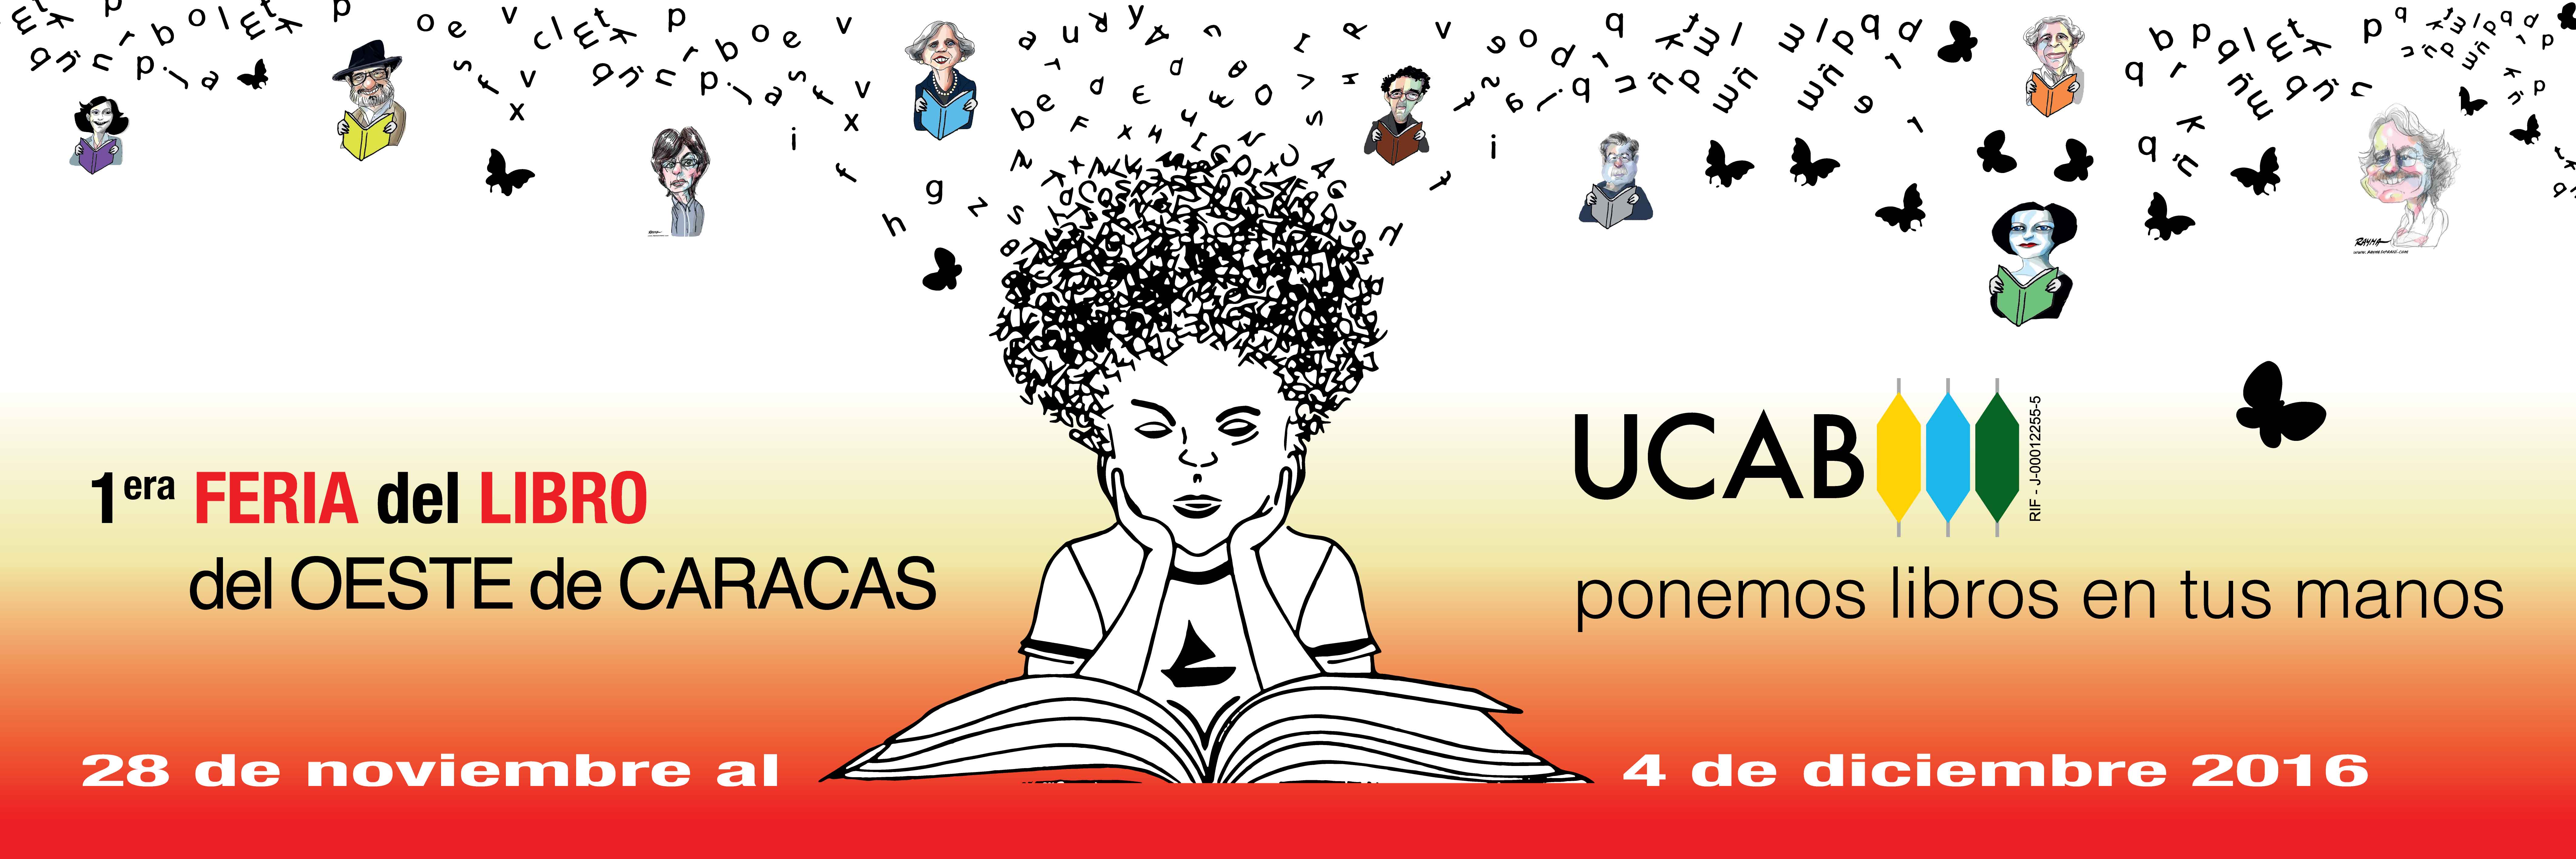 Invitan a la 1ra Feria del Libro del Oeste de Caracas